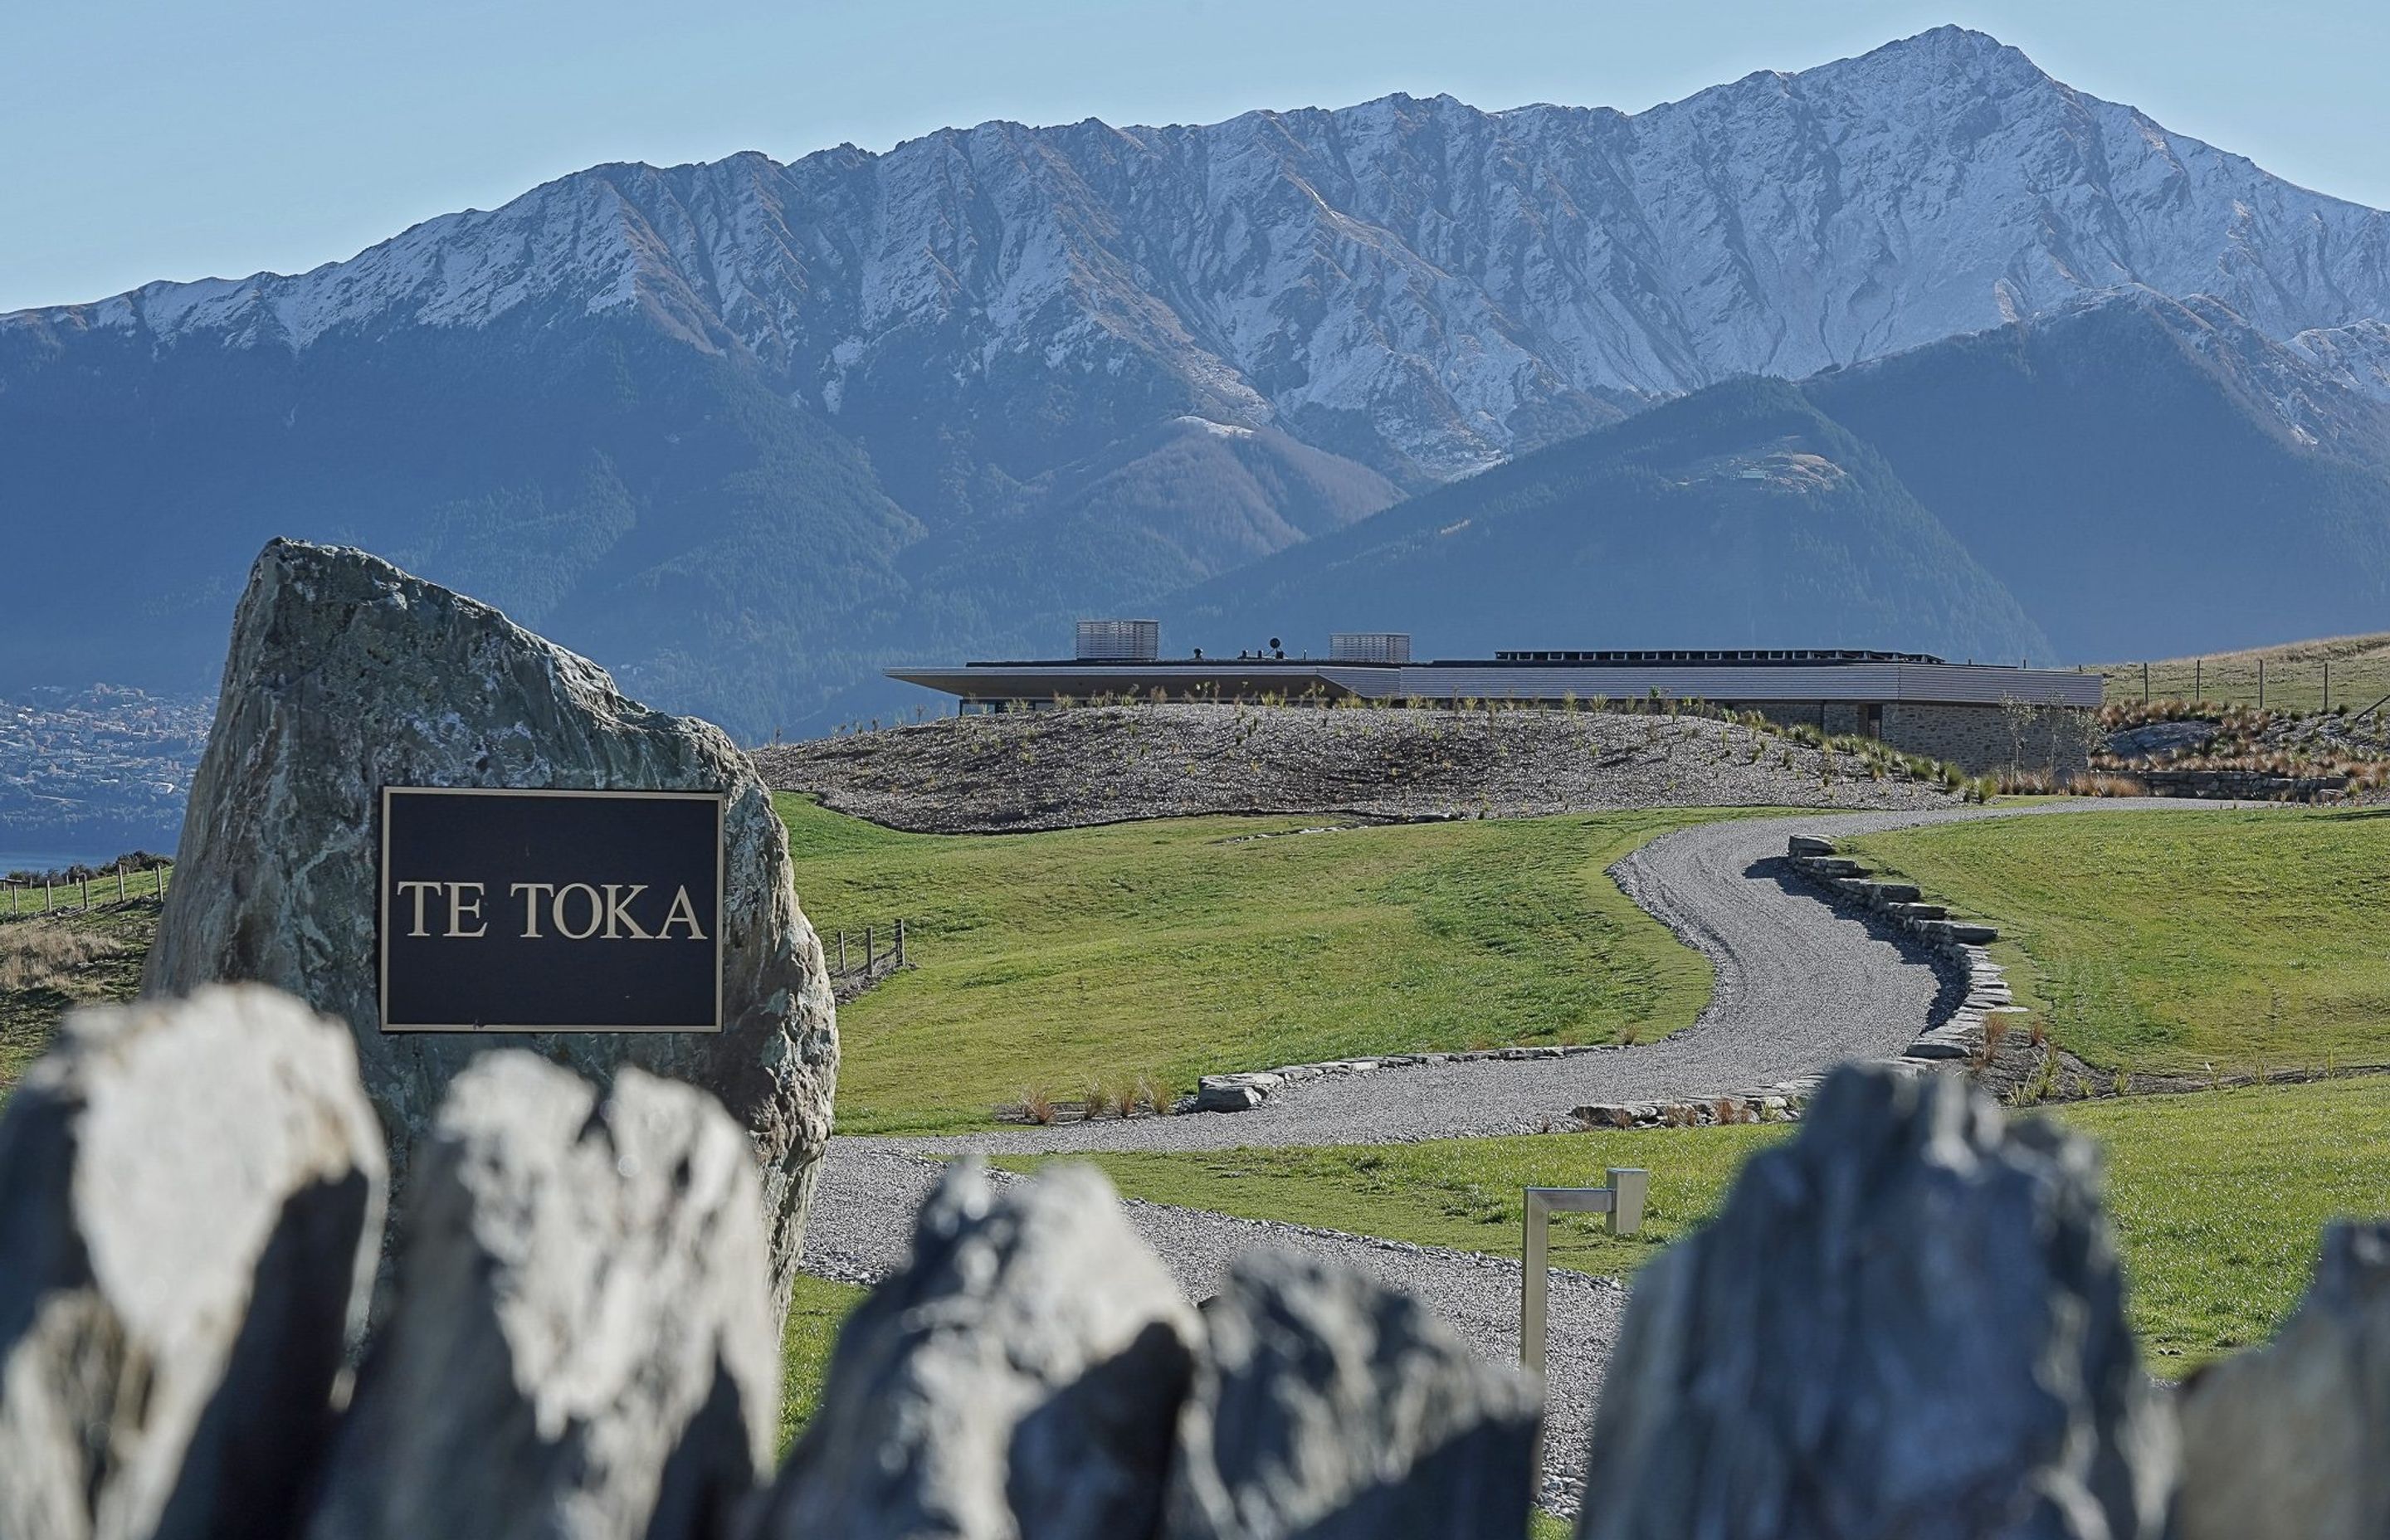 Te Toka (The Rock), Jacks Point